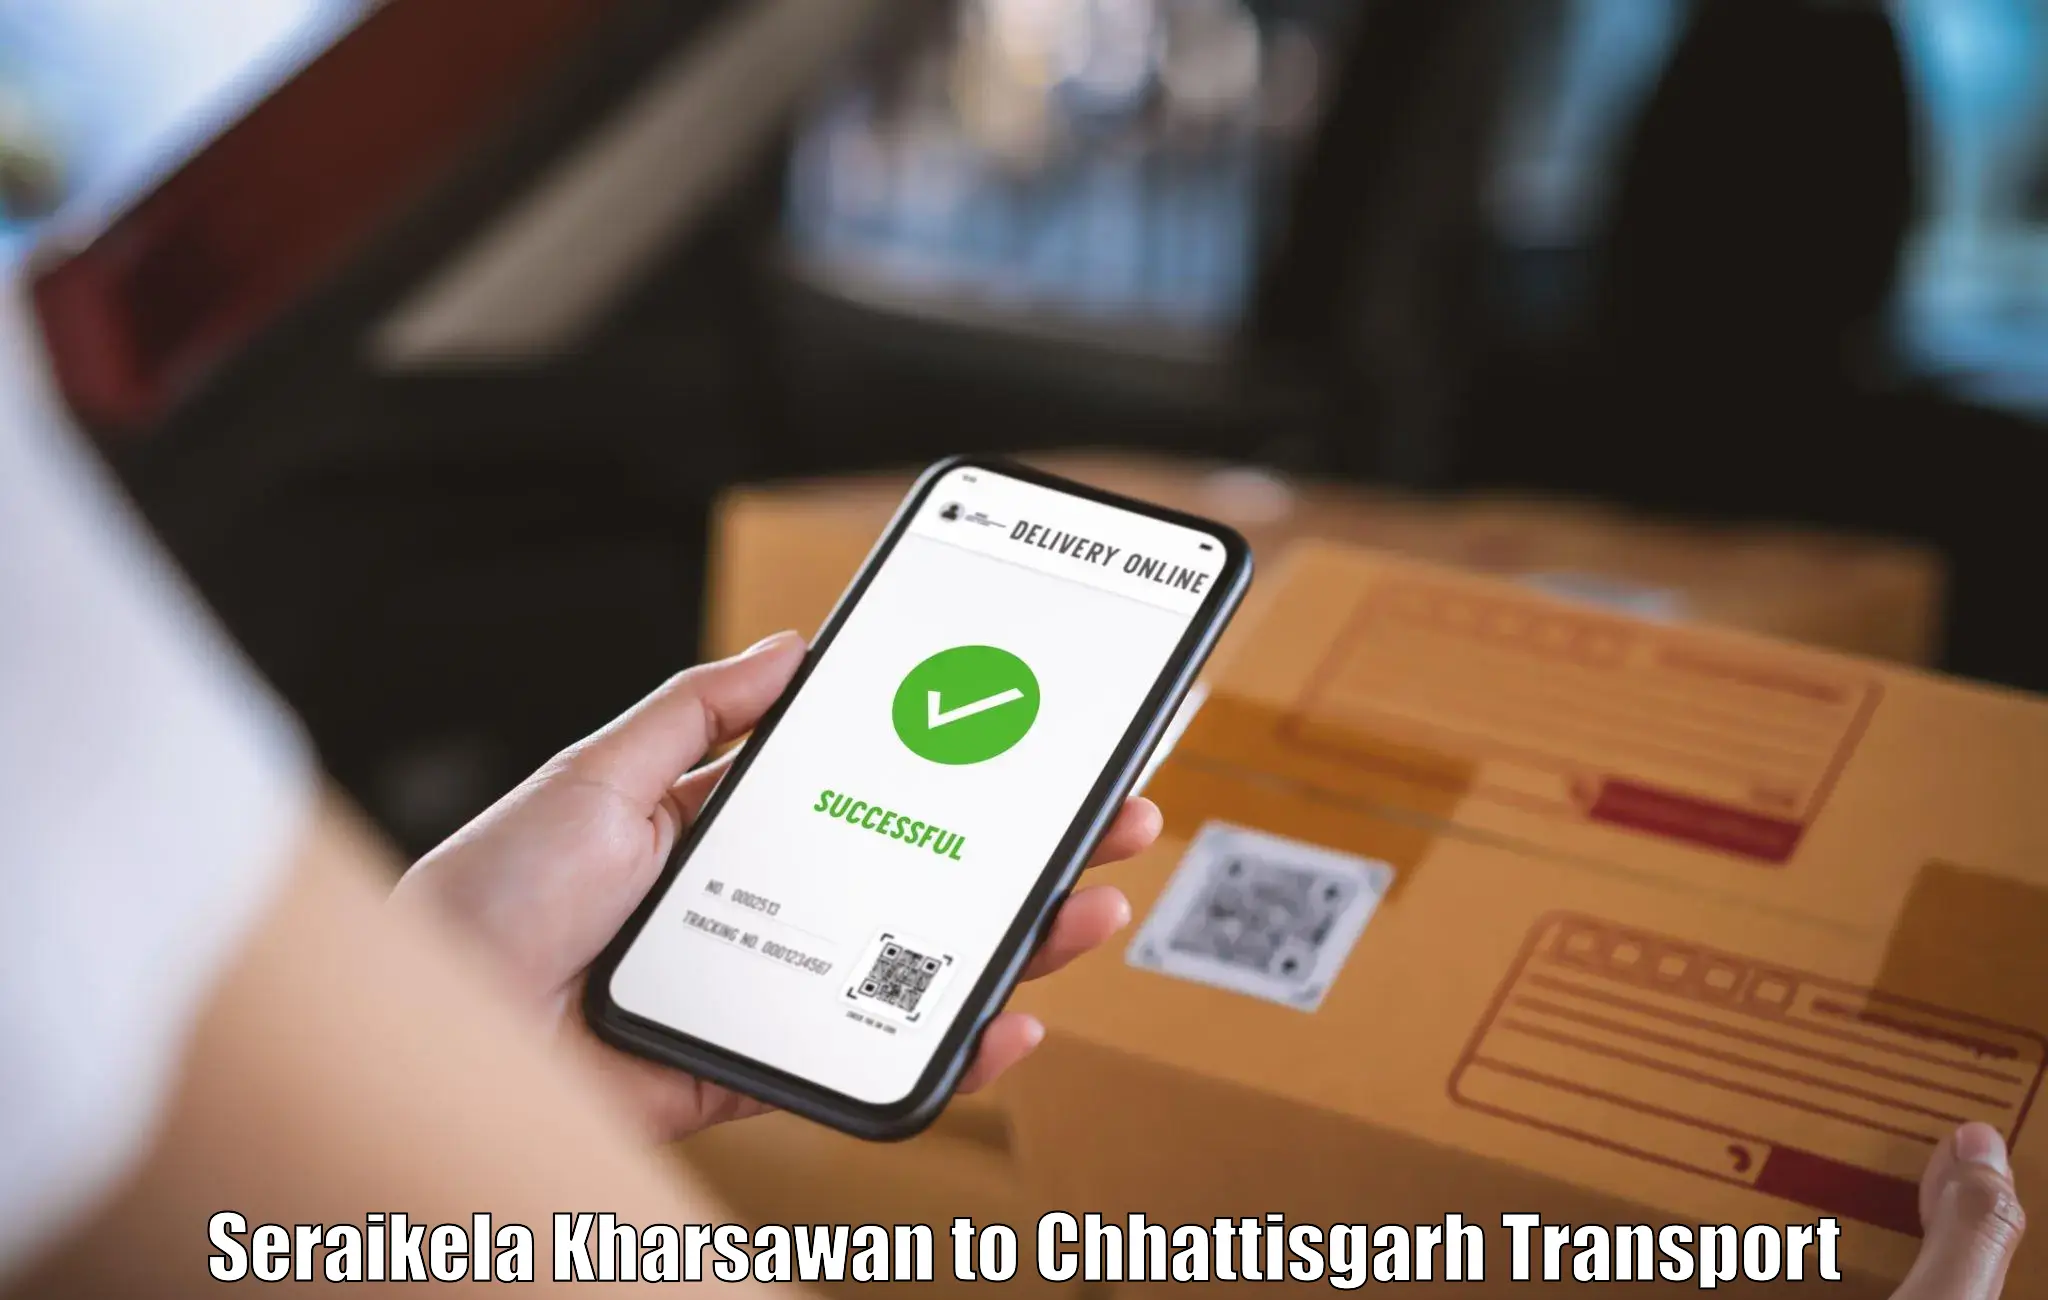 Daily transport service Seraikela Kharsawan to Janjgir Champa